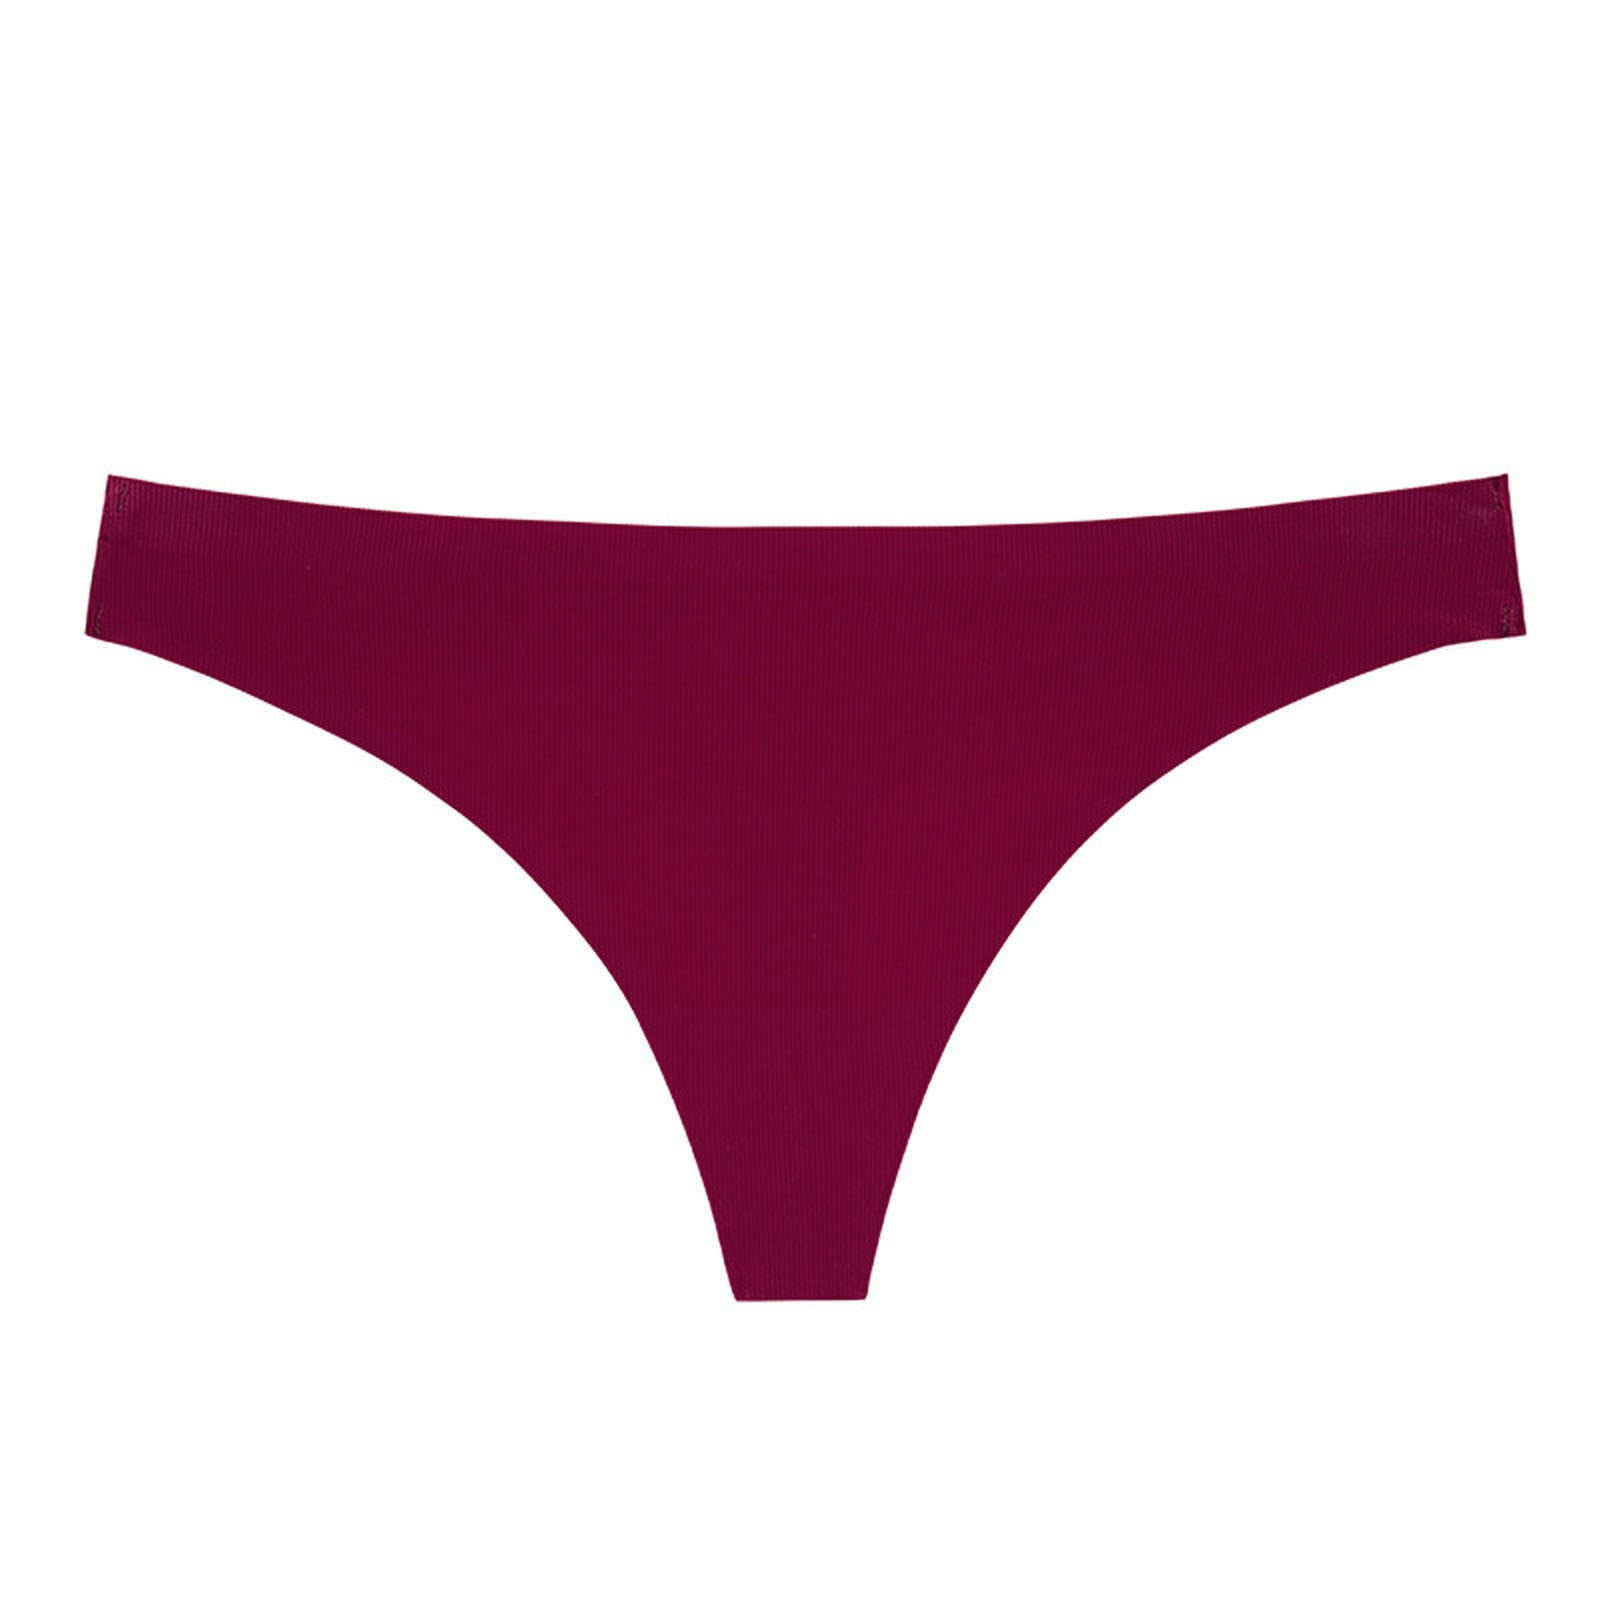 See Thru Bikini Panties Seamless Thong Panties Women S Breathable Stretch Thong Underwear Thong